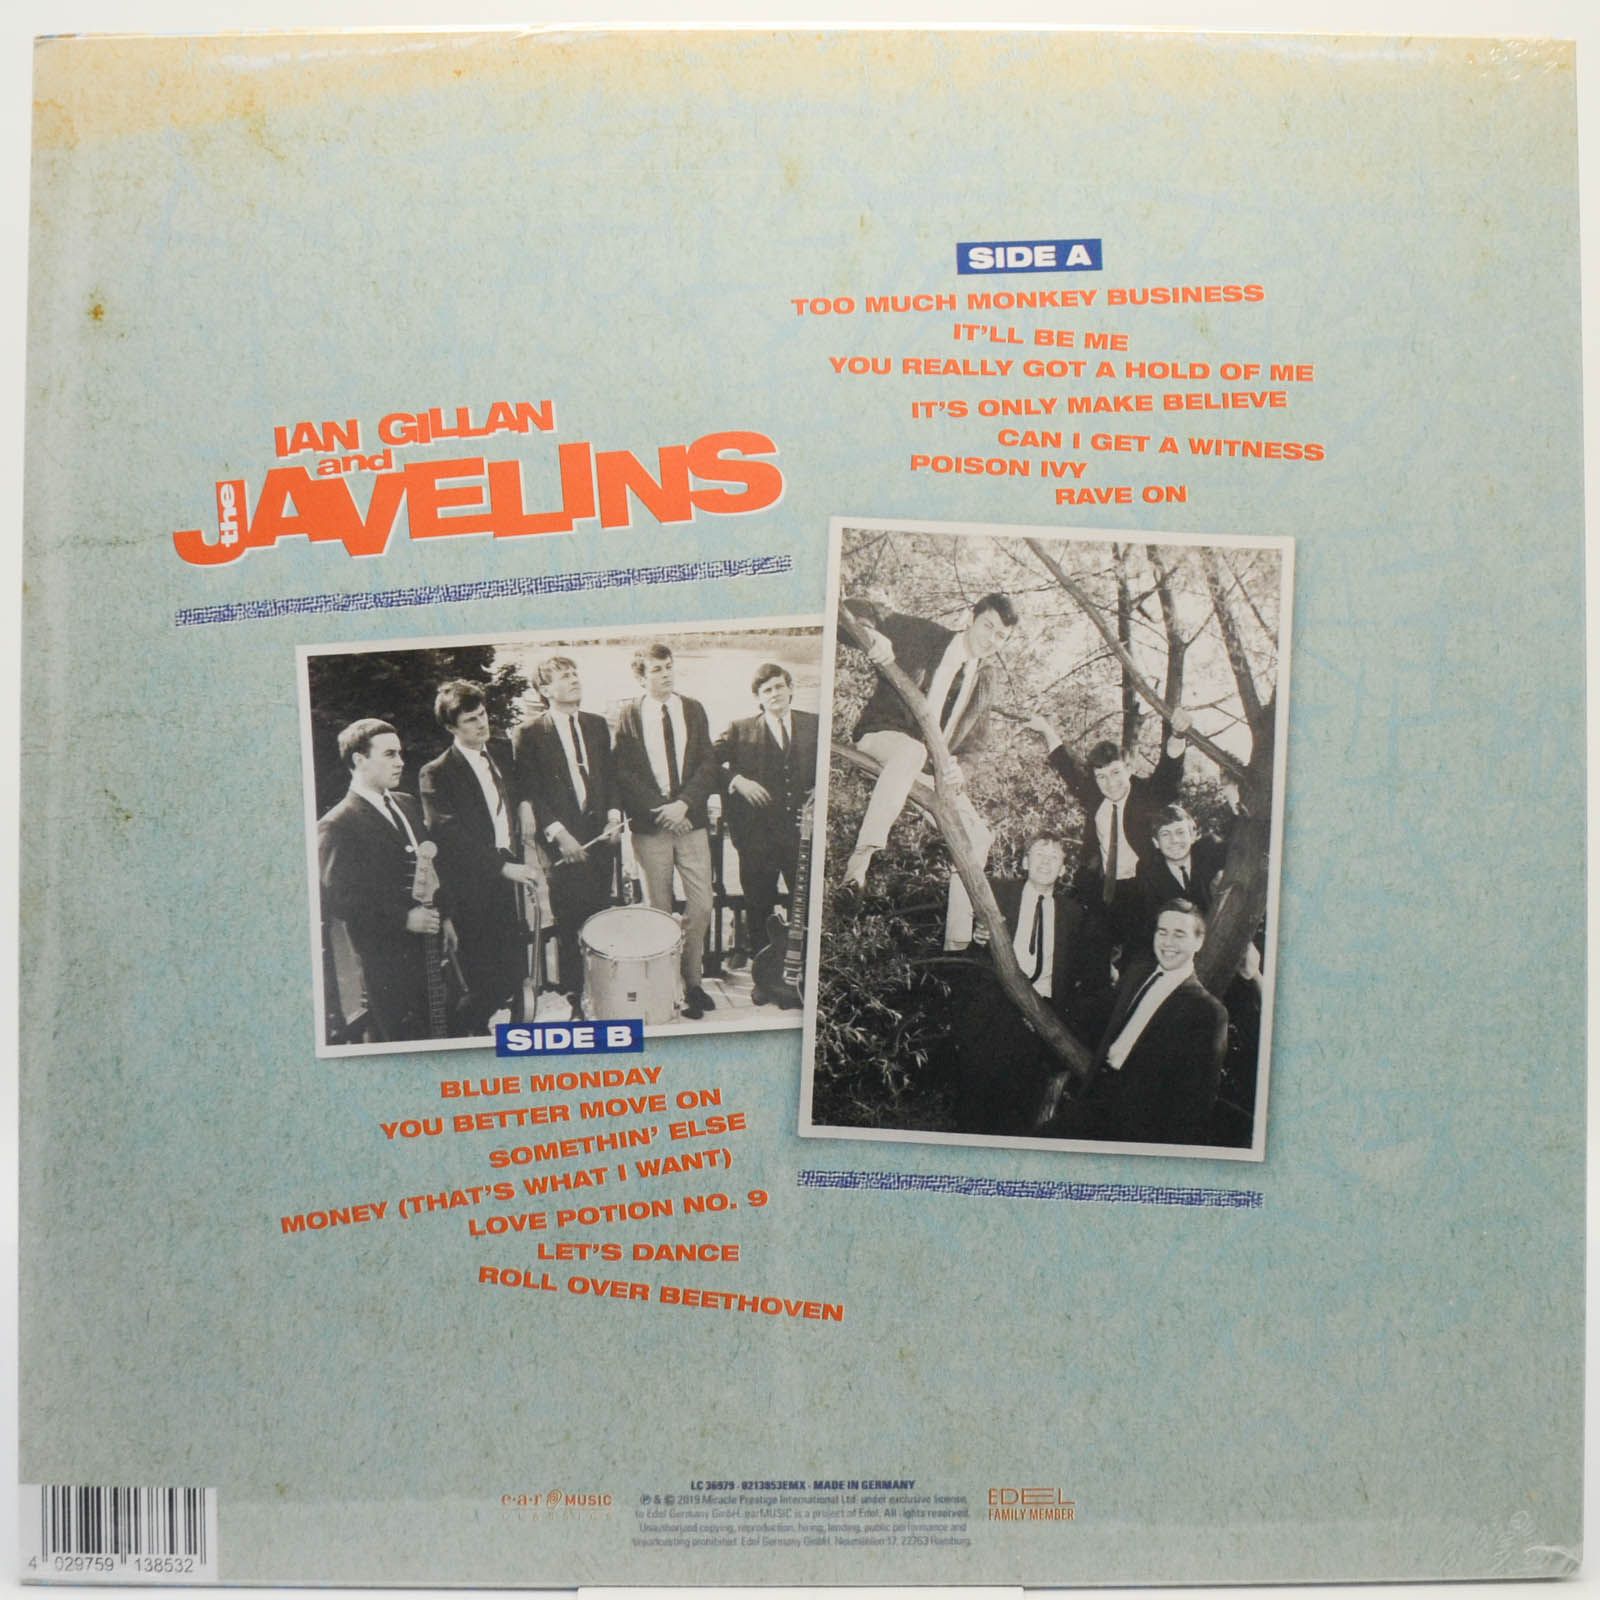 Ian Gillan And The Javelins — Raving With Ian Gillan & The Javelins, 1994